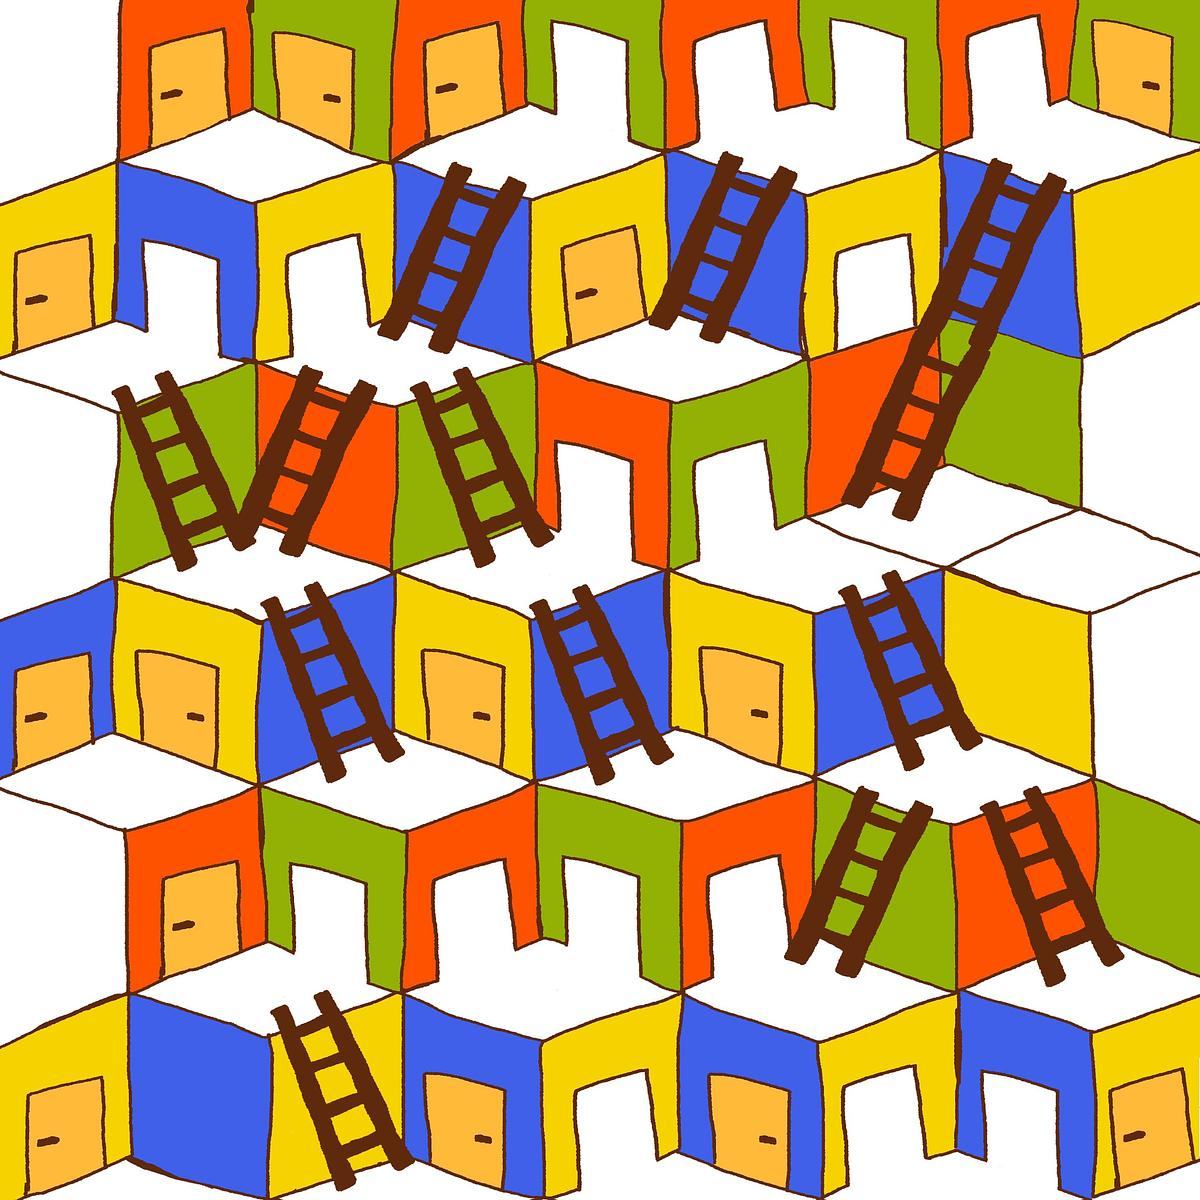 Титульное изображение для страницы события: иллюстрация, сине-желтые и оранжево-зеленые кубики с дверями друг над другом, от нижних к верхним ведут лестницы